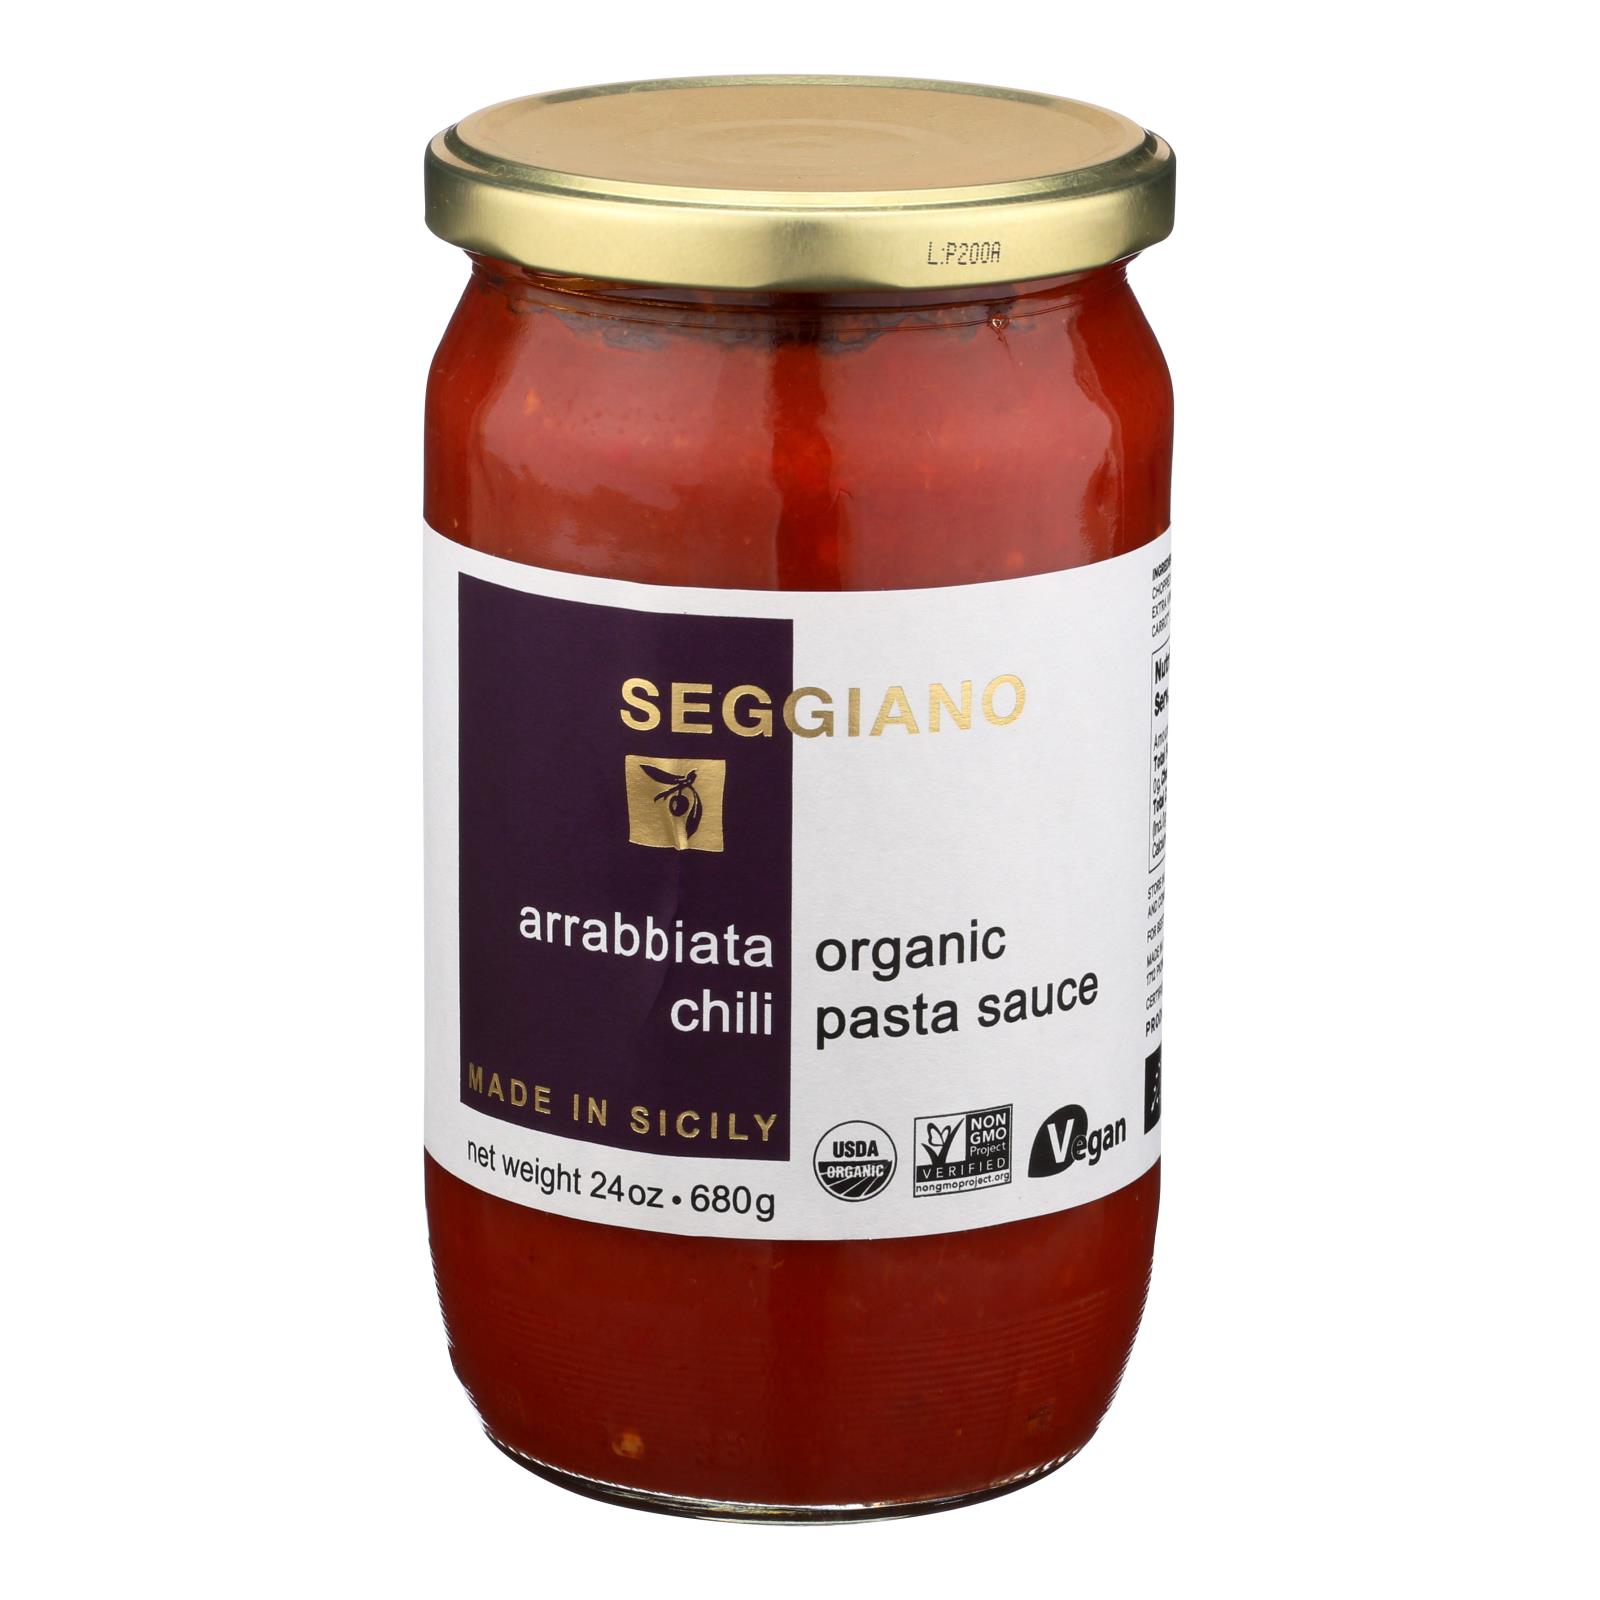 Seggiano Arrabbiata Organic Chili Pasta Sauce - Case of 6 - 24 OZ